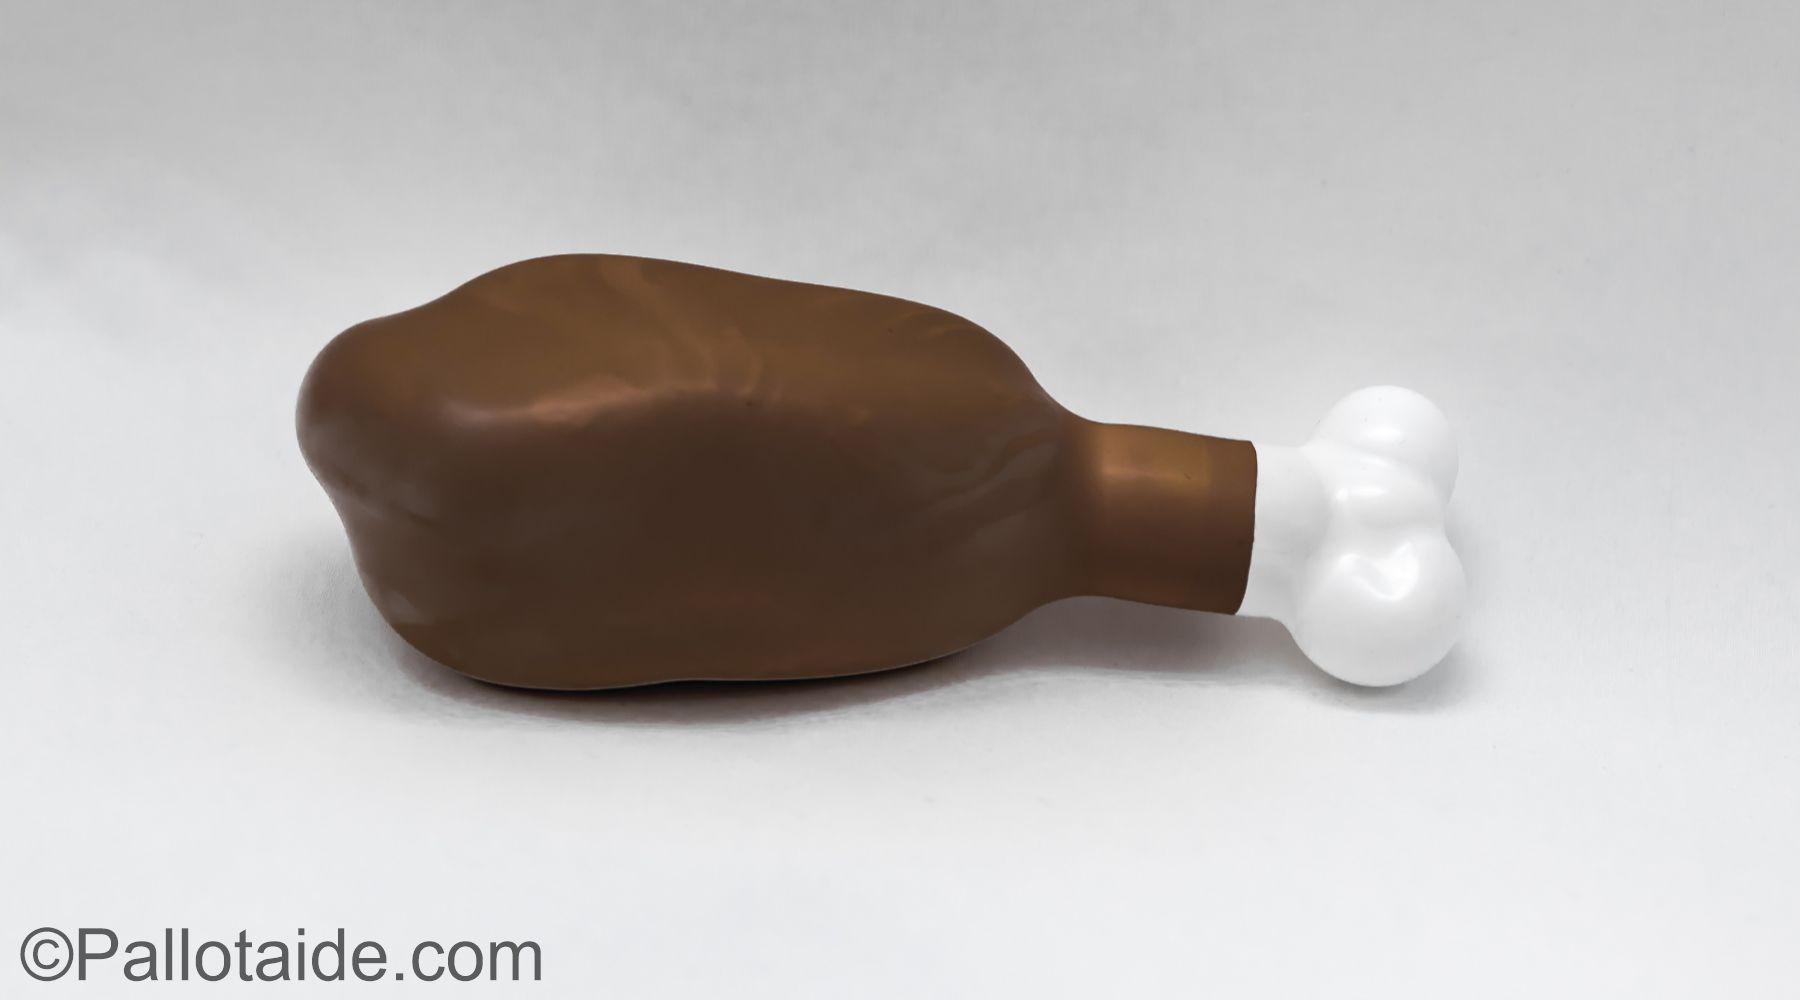 roasted chicken leg - made using 100% latex balloons by Pallotaide - tehty pelkistä lateksi-ilmapalloista. Kanankoipi.